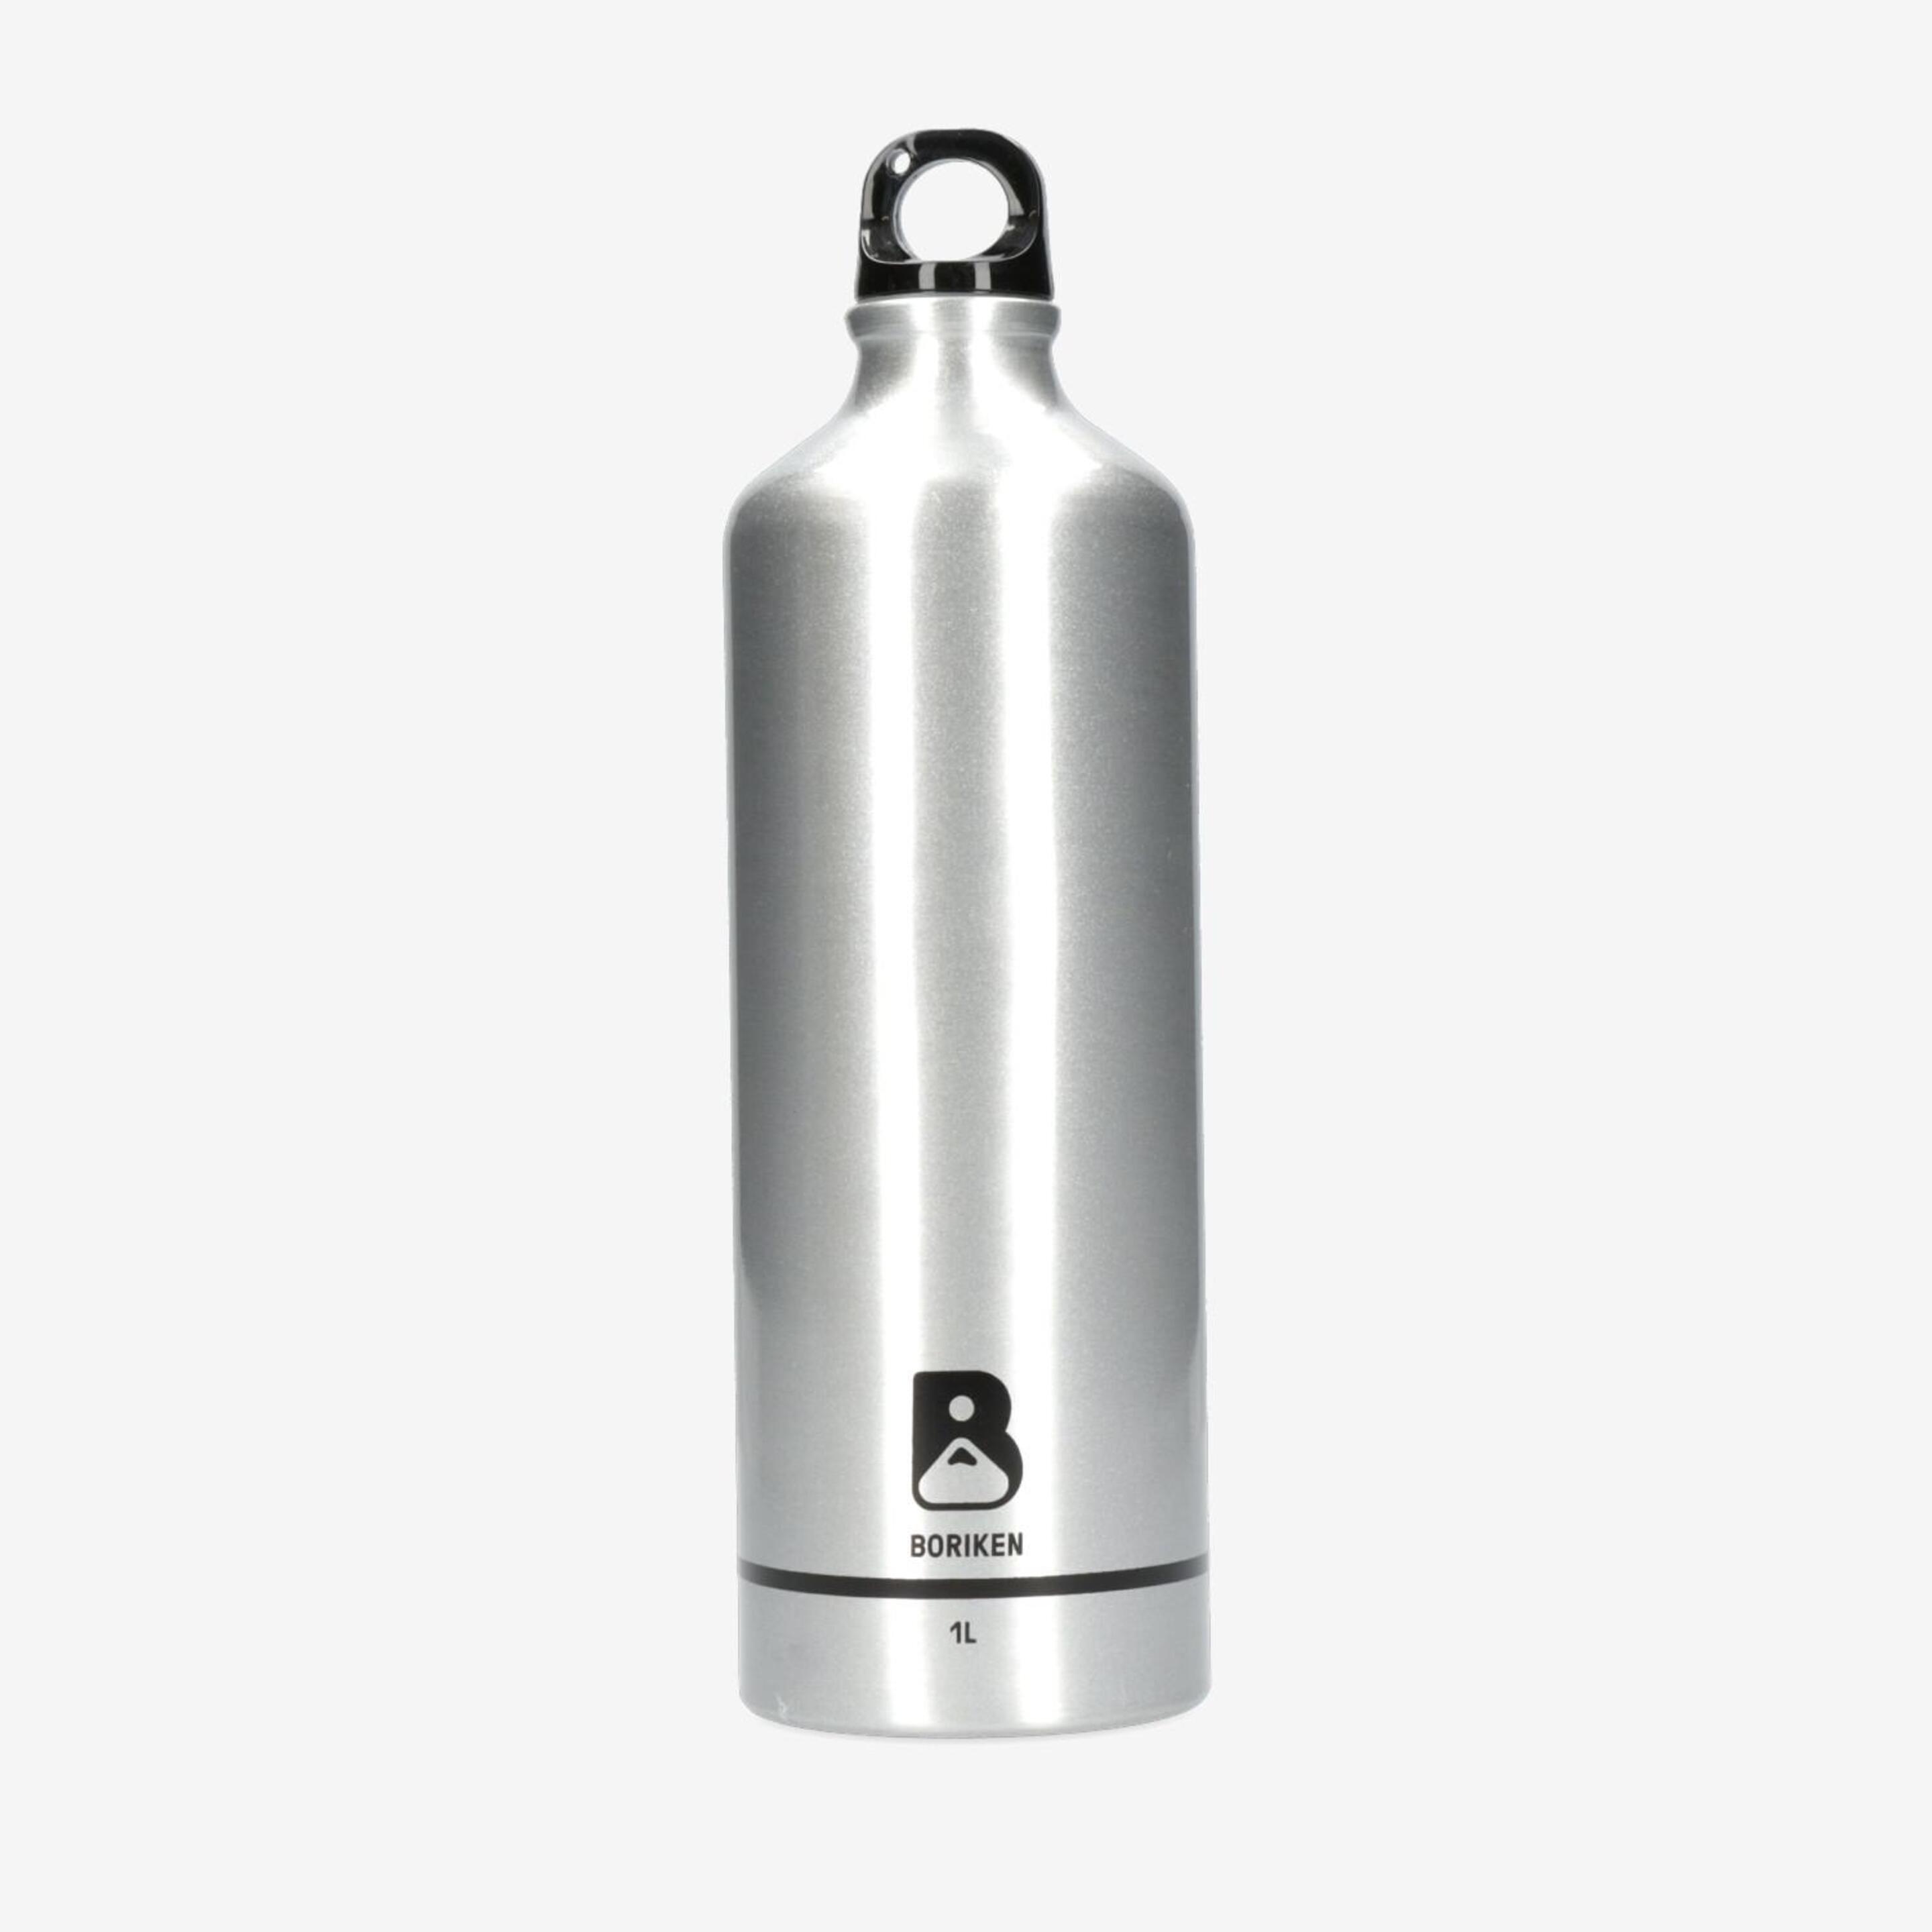 Brk Botella Aluminio 1 Litro